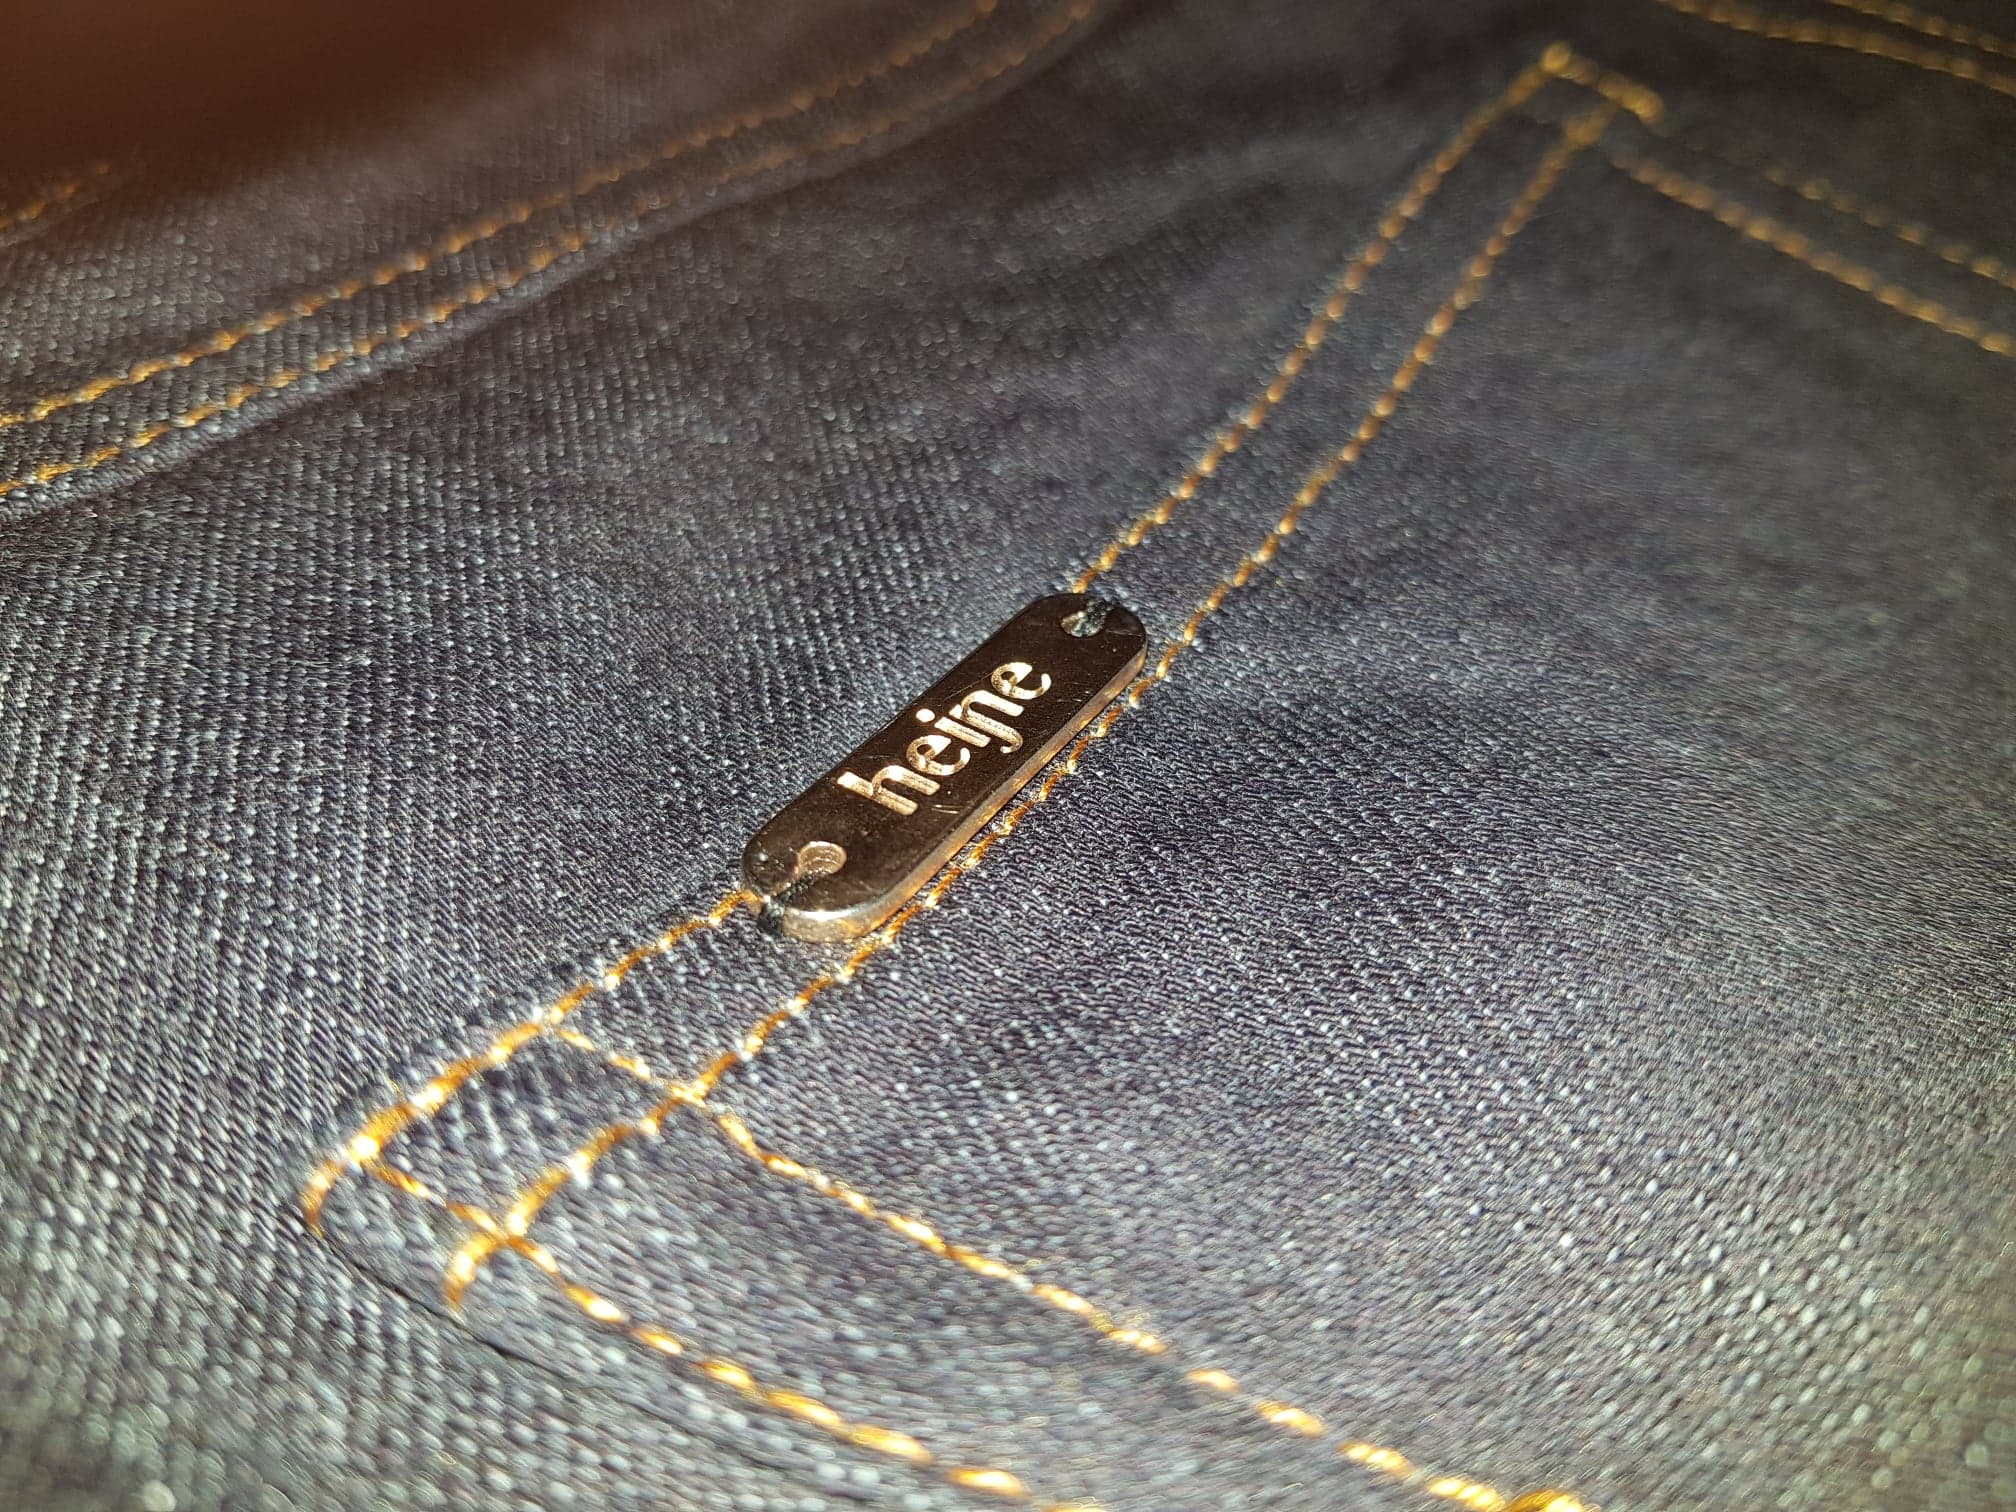 Custom made jeans by Studio Heijne